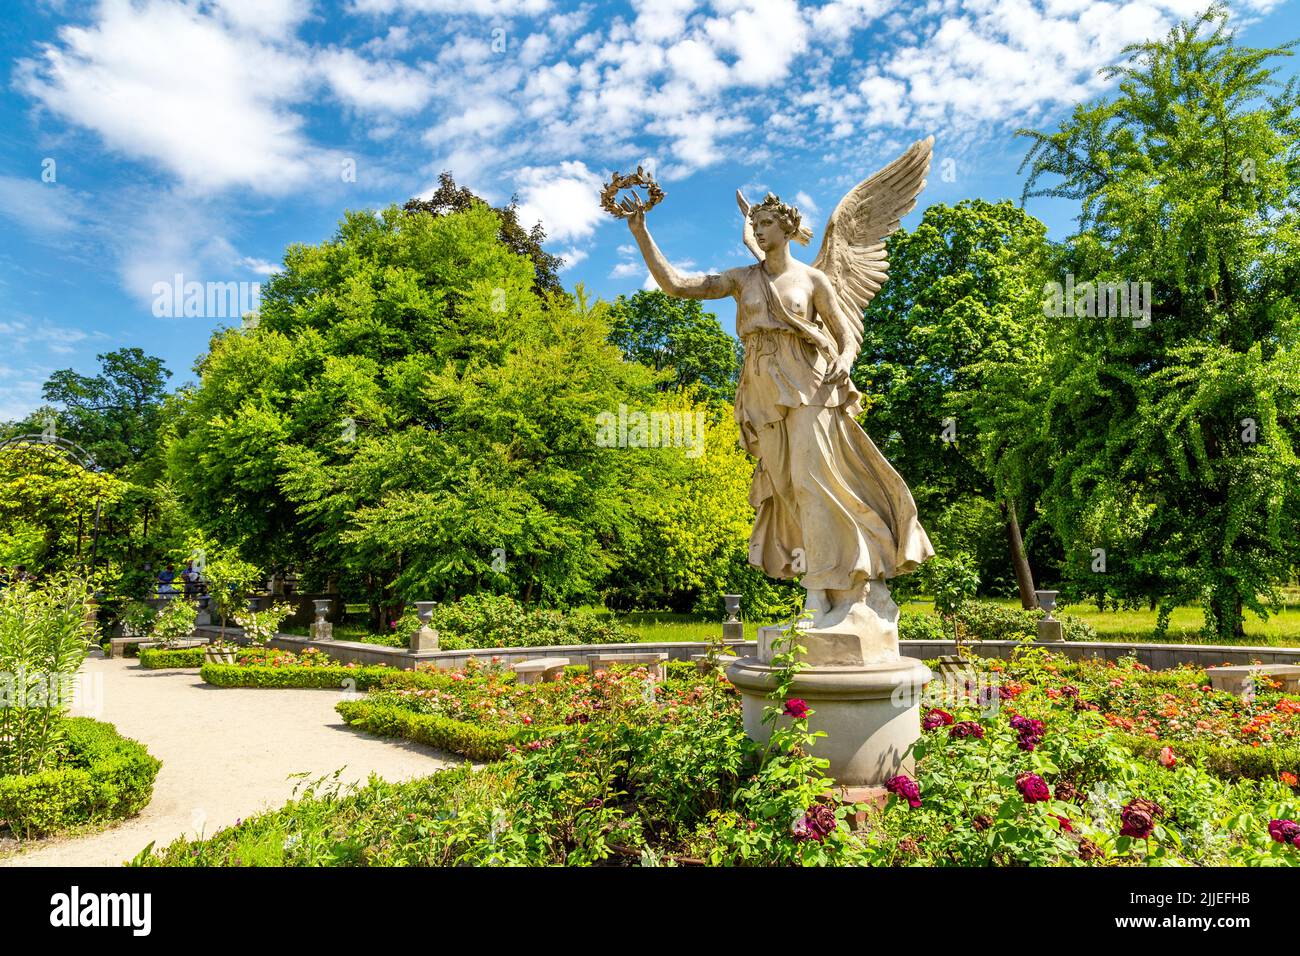 Sculpture d'un ange dans la roseraie de style italien Palais royal baroque de Wilanow datant du 17th siècle, Varsovie, Pologne Banque D'Images